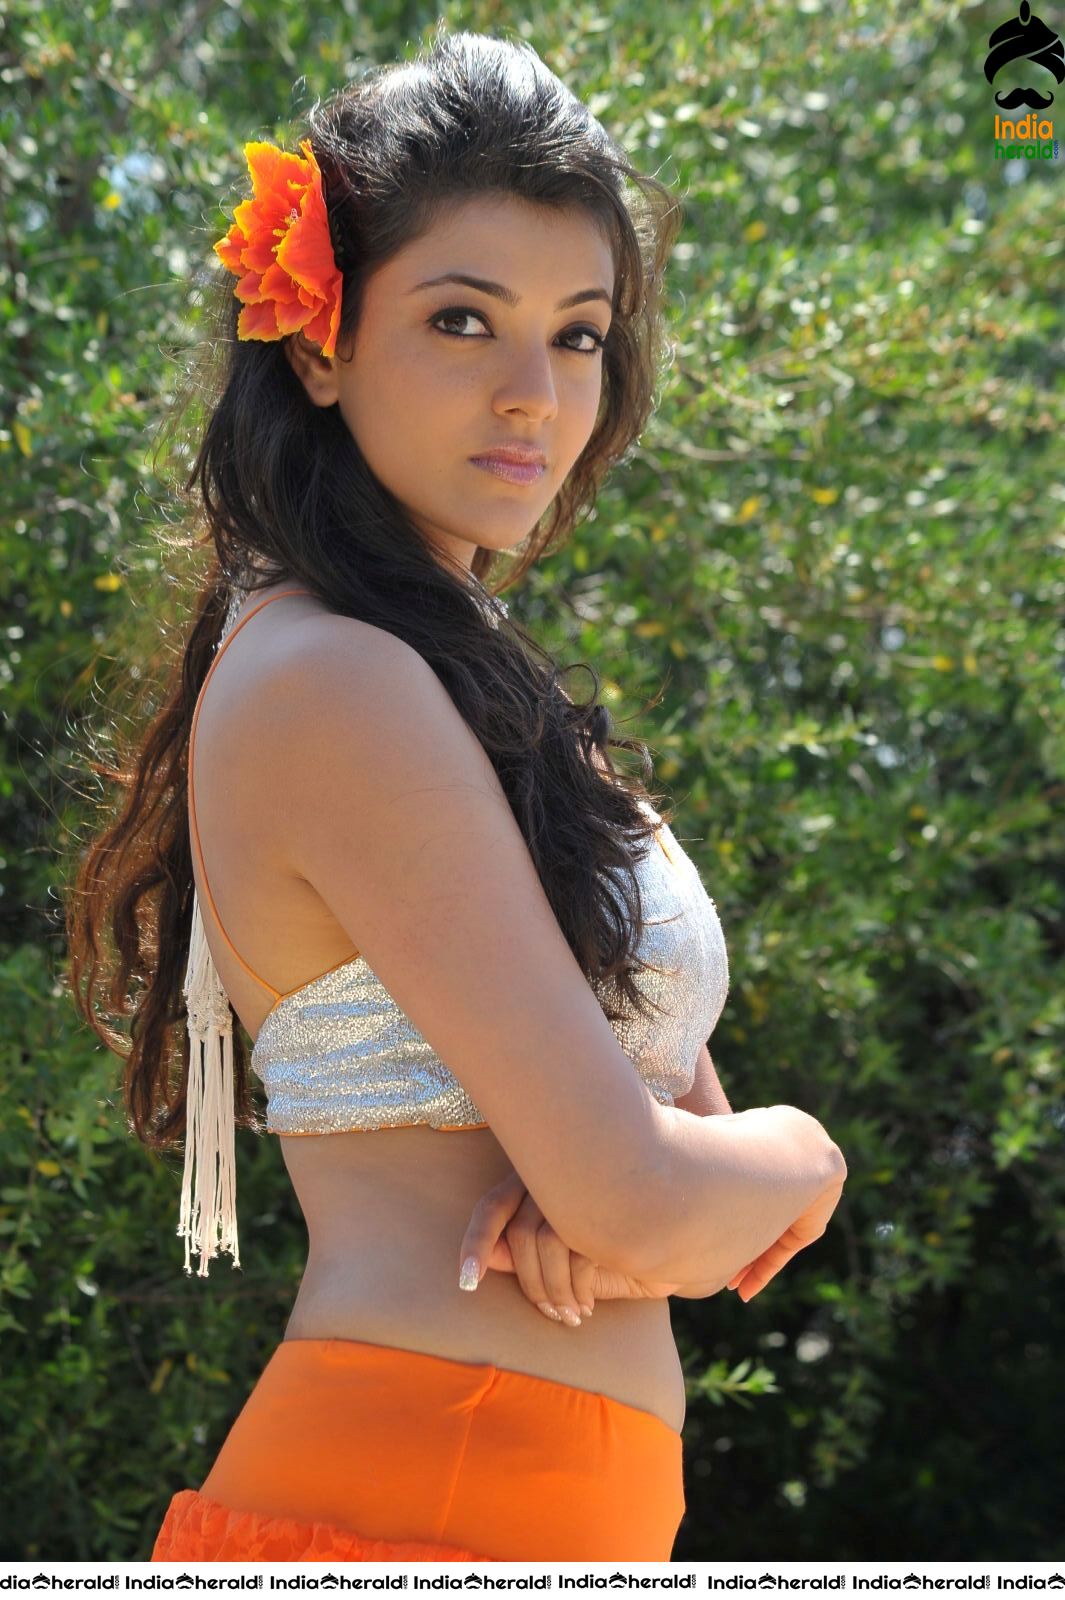 Kajal Aggarwal Hottest Skin Show Photos in Bikini on Beach Sands as she teases our mood Set 2